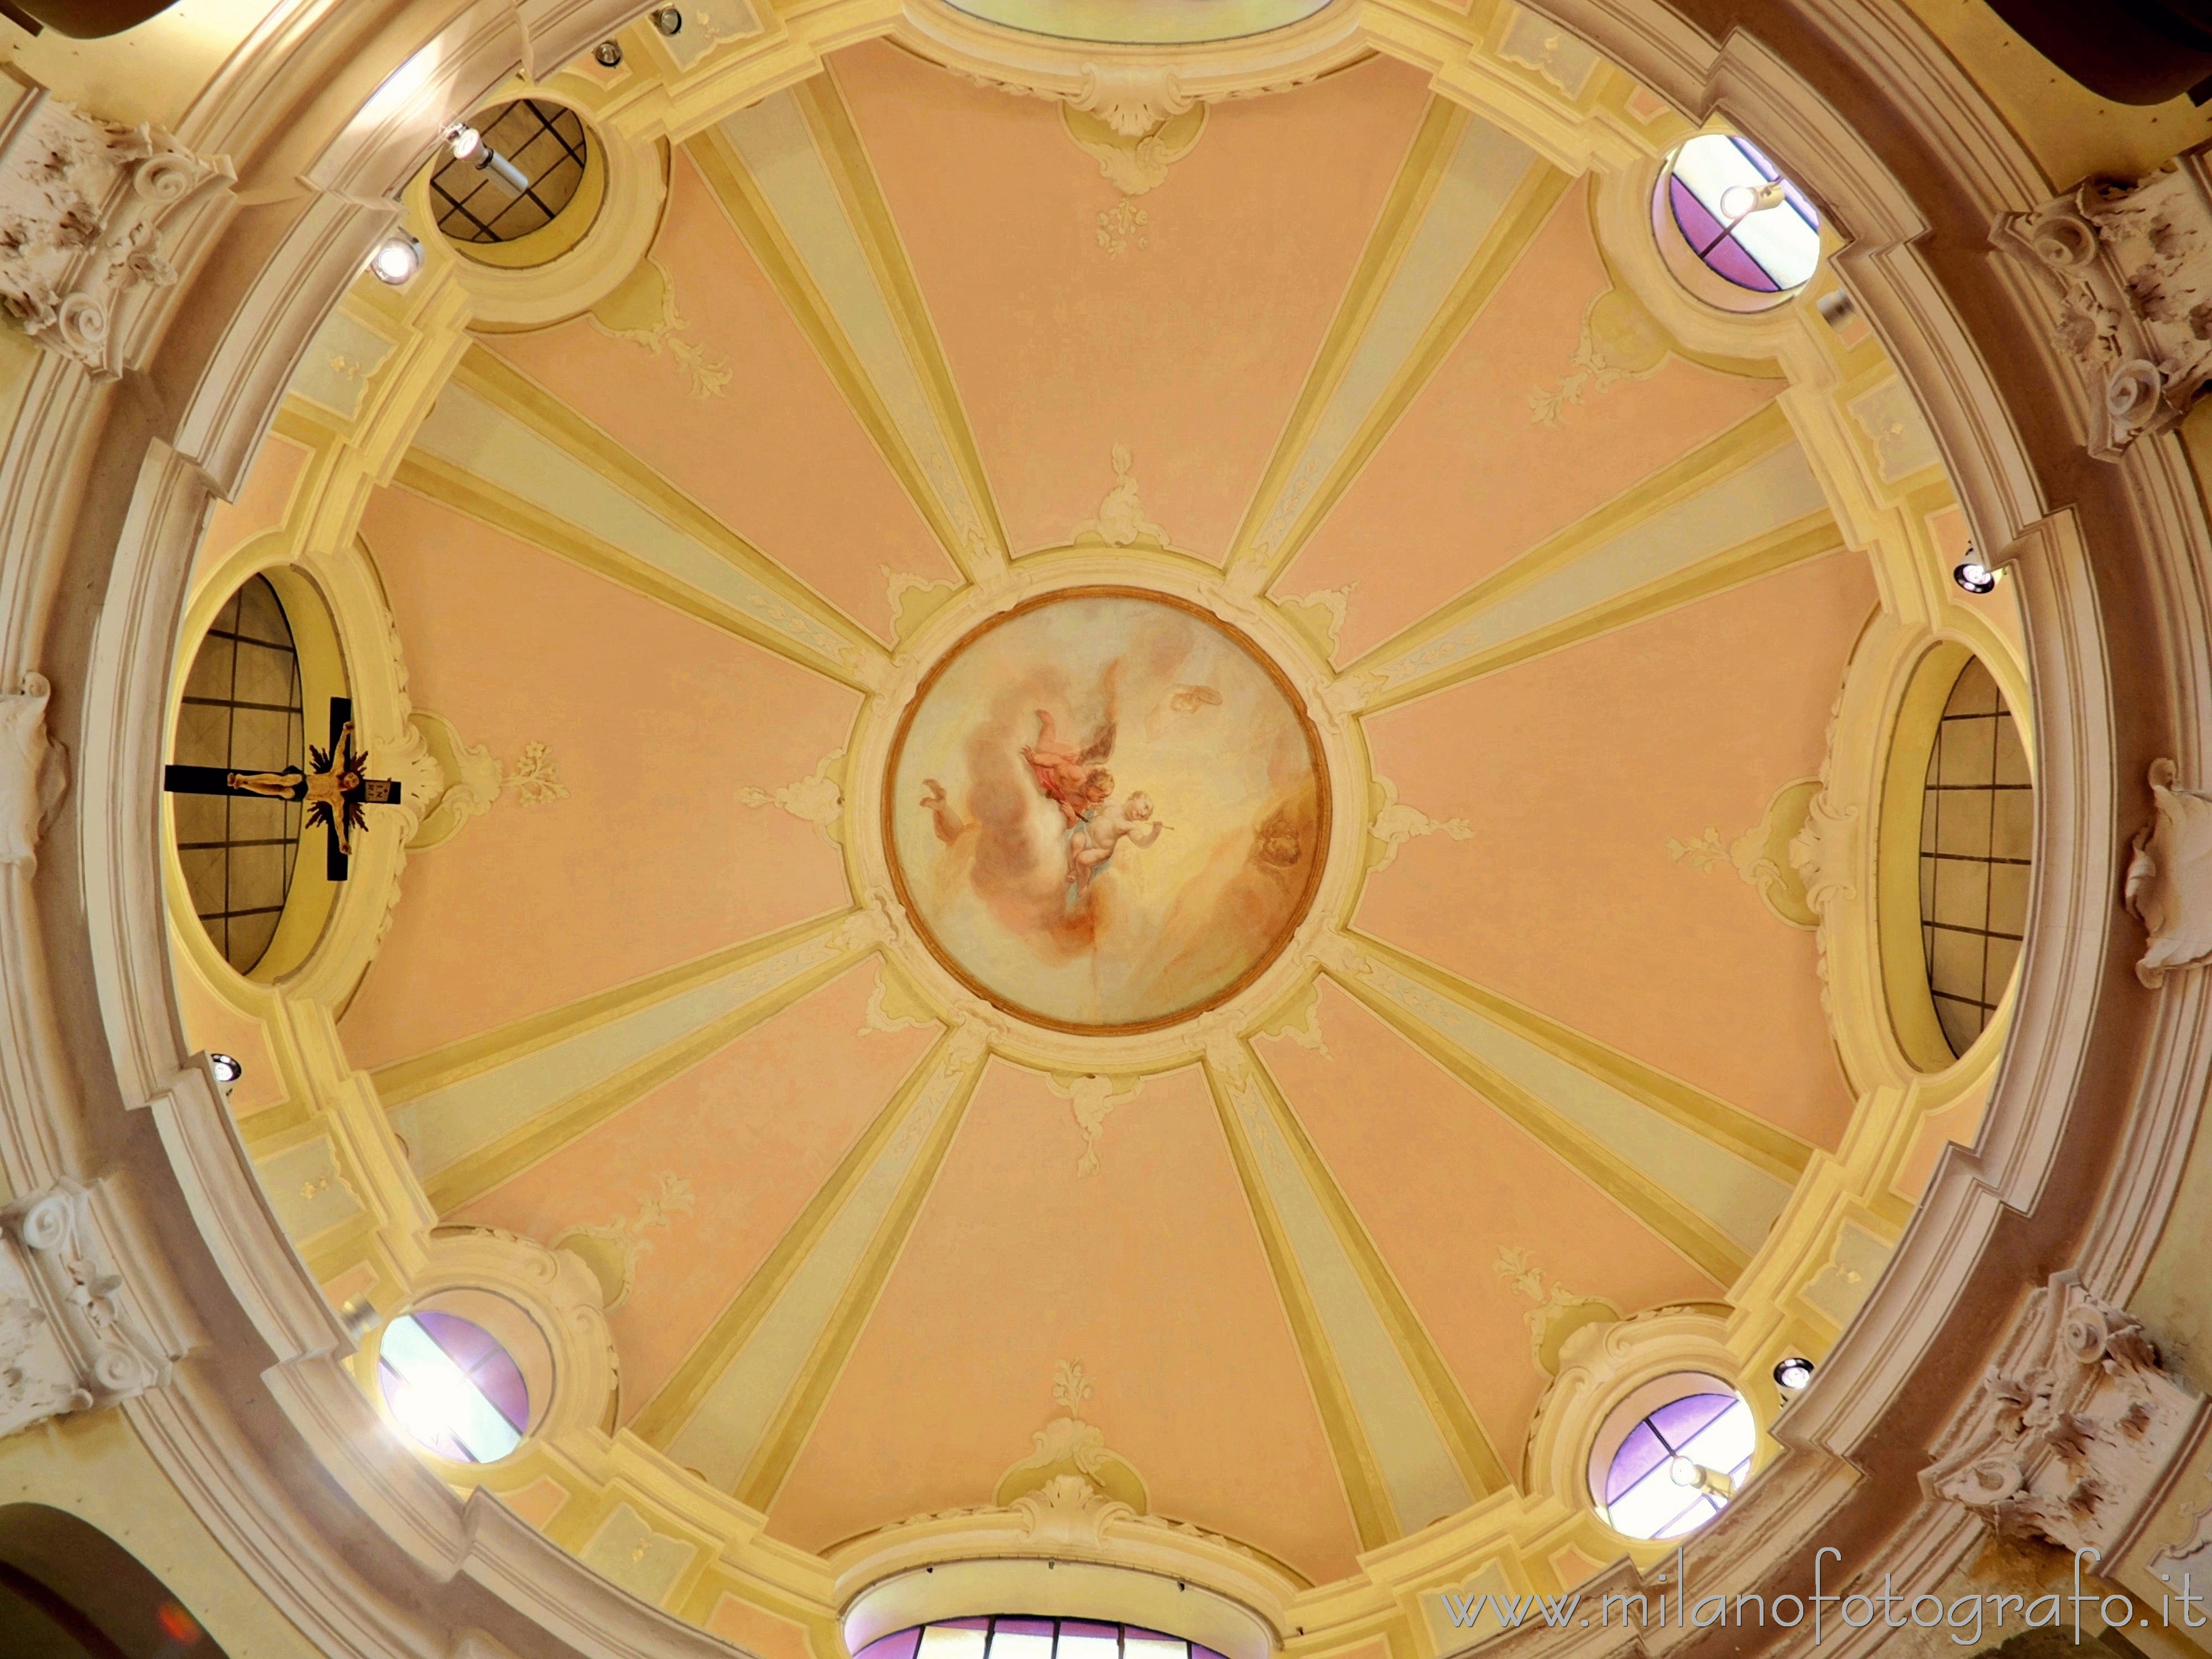 Limbiate (Monza e Brianza): Interno della cupola dell'Oratorio di San Francesco in Villa Pusterla Arconati Crivelli - Limbiate (Monza e Brianza)